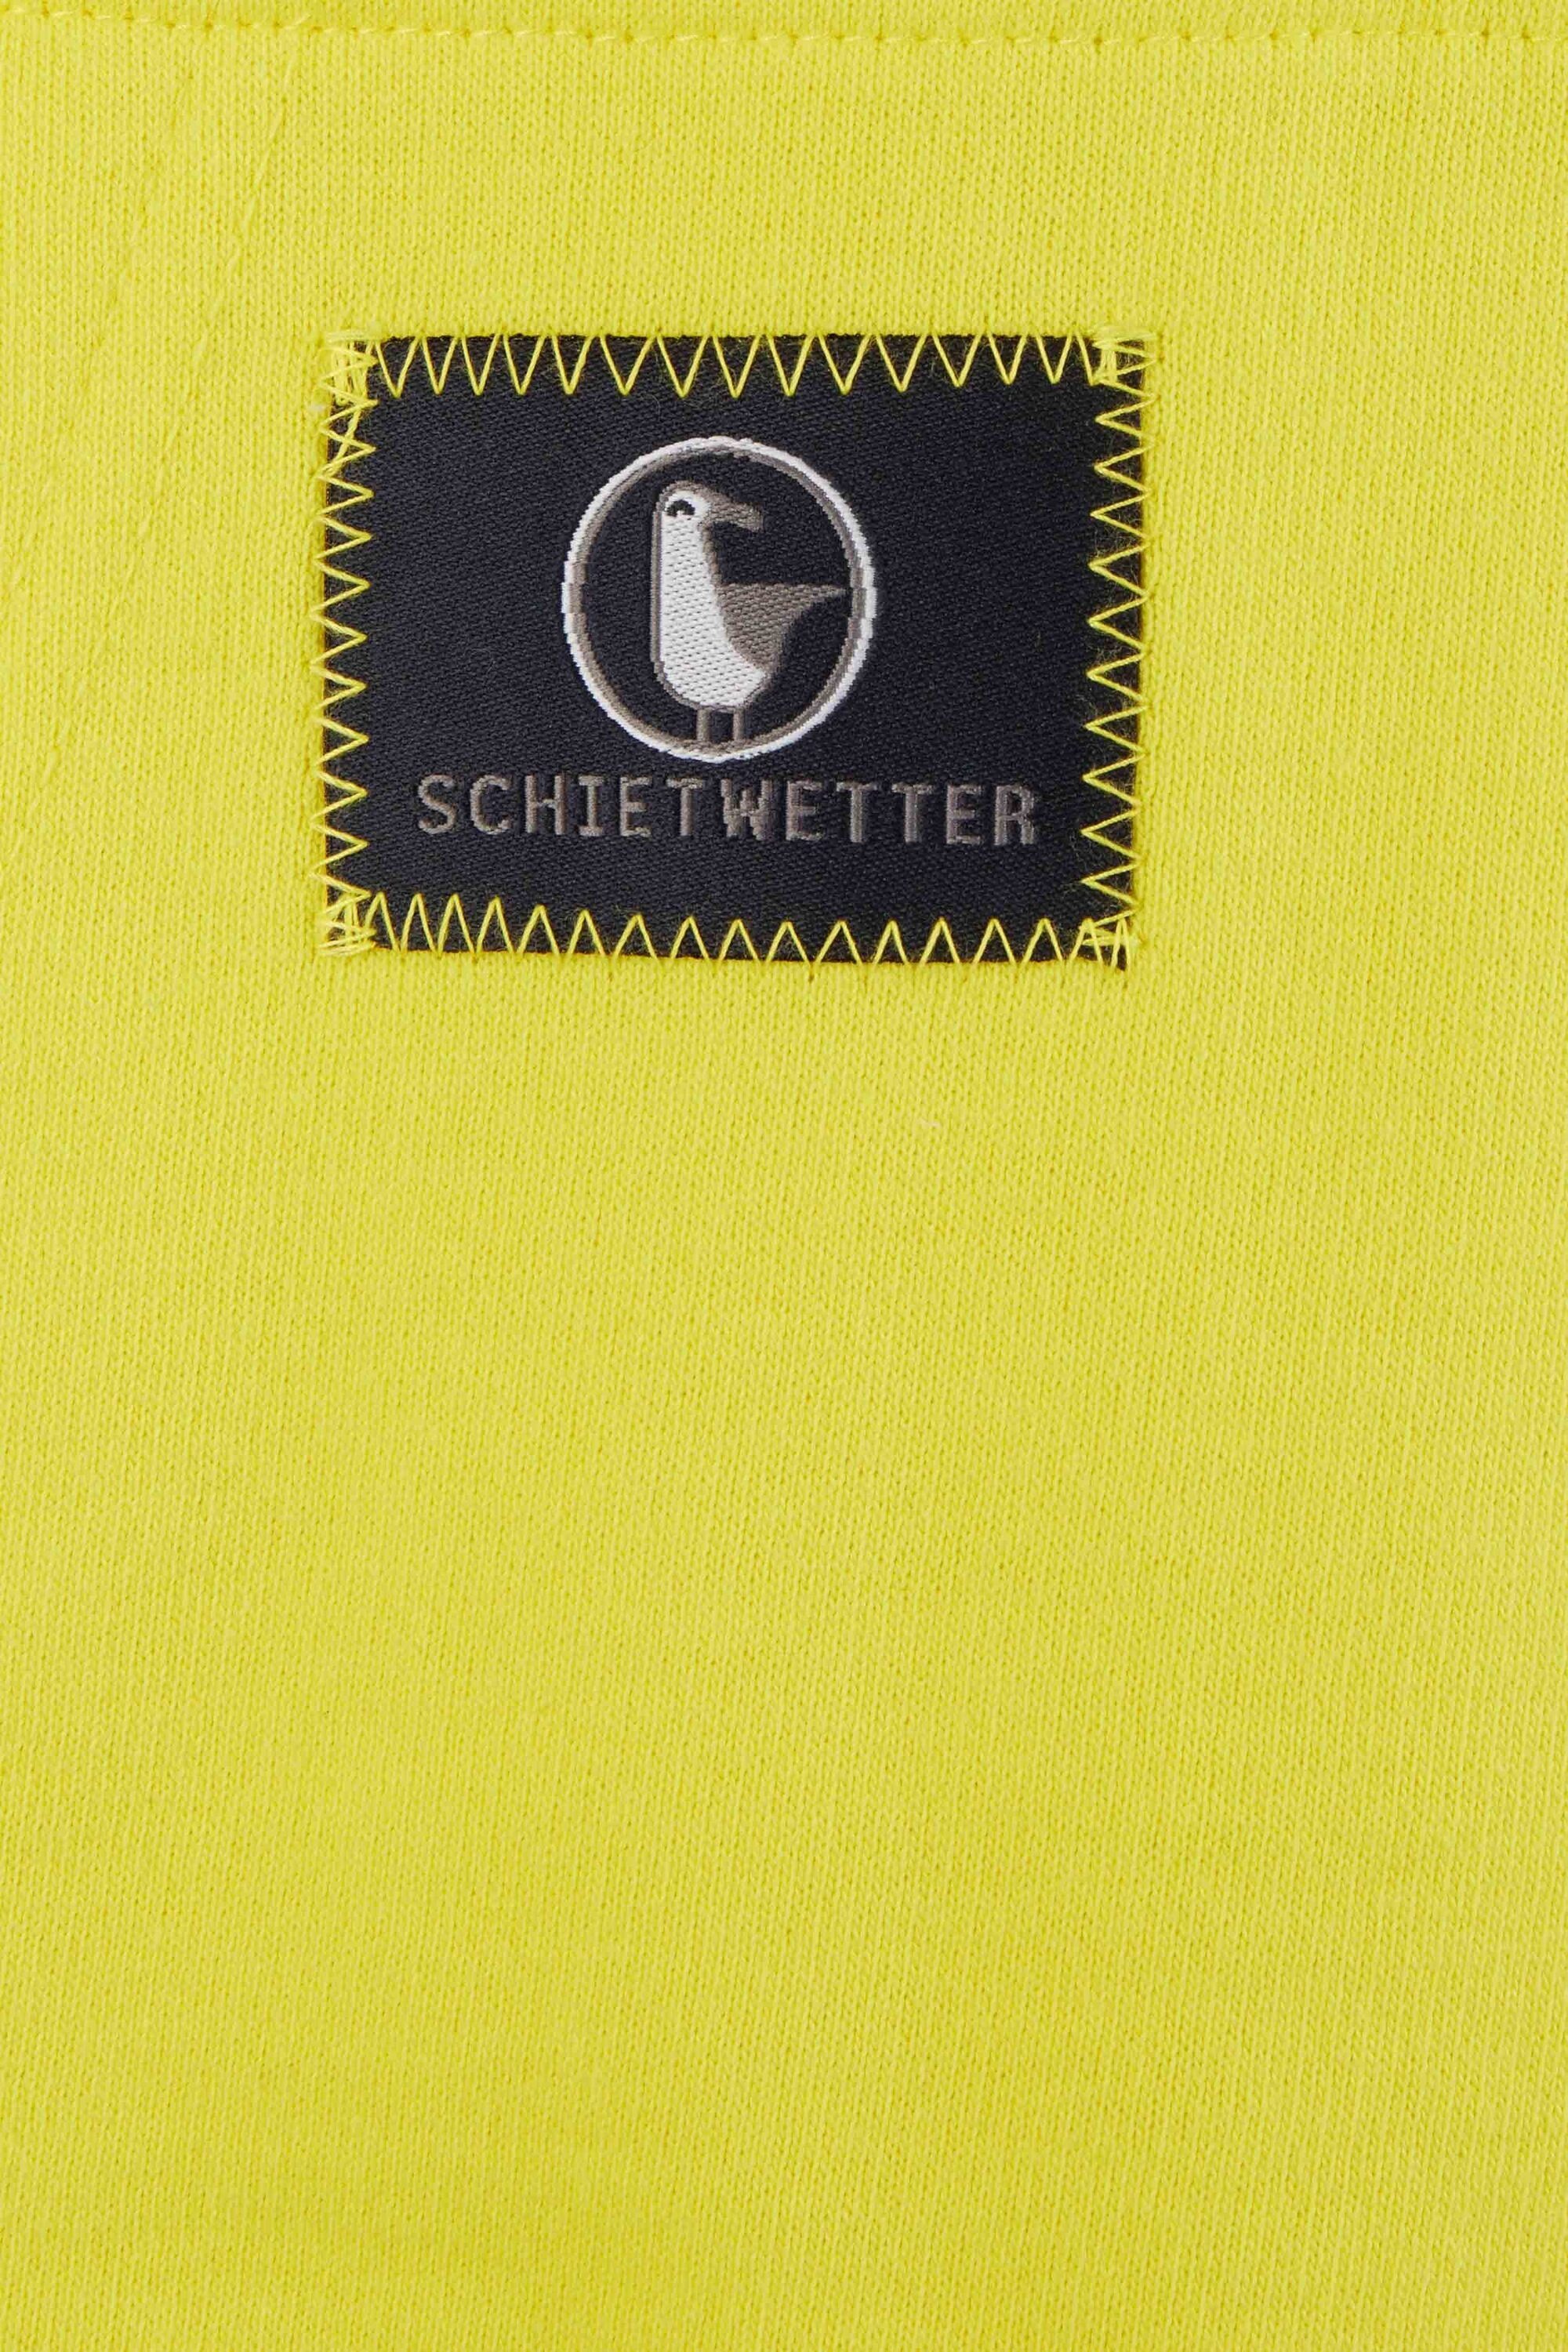 weich kuschelig, bequem, Unisex Schietwetter Kapuzenpullover yellow/navy